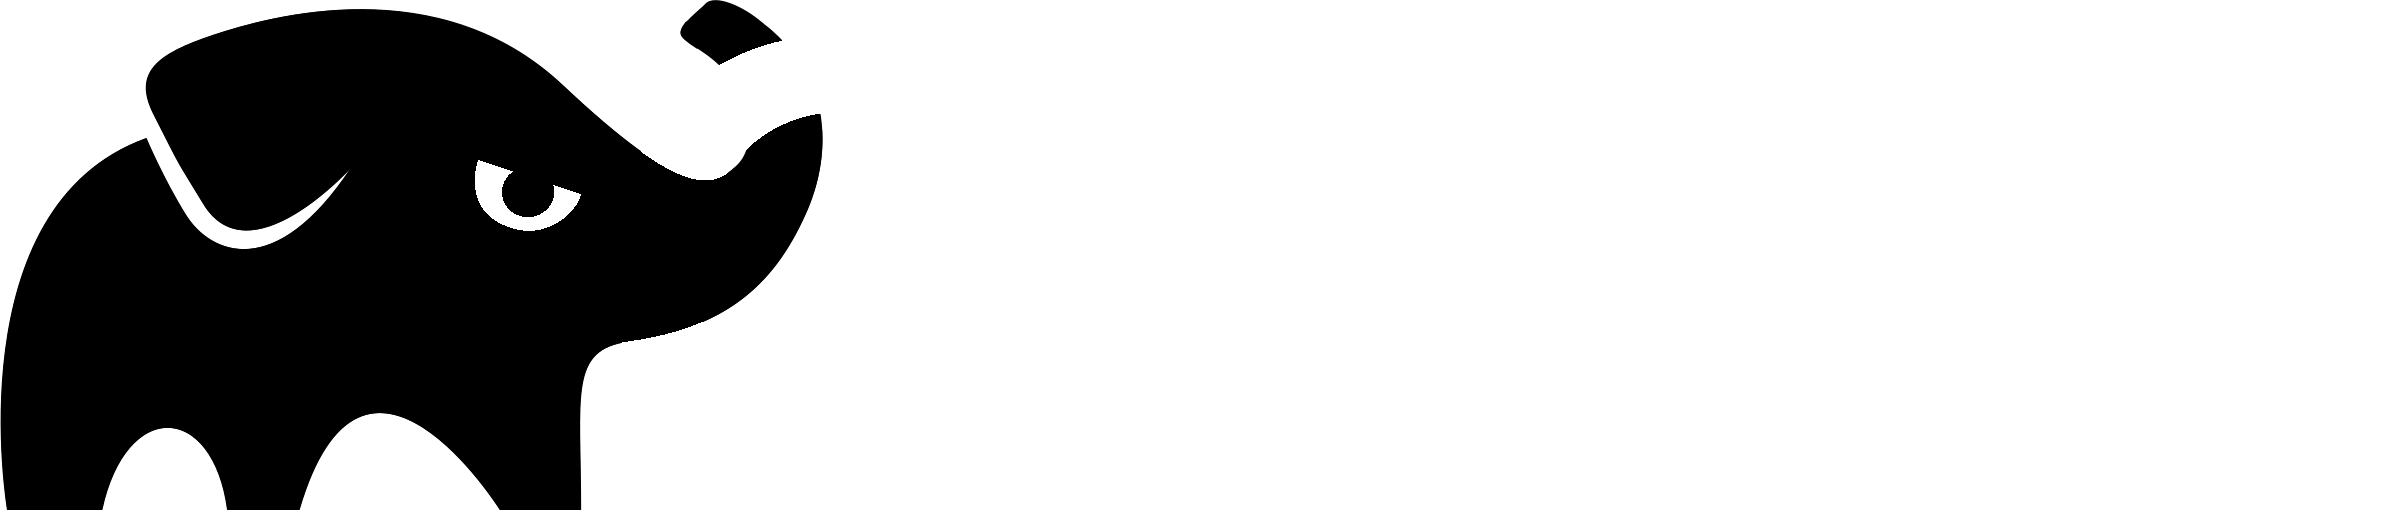 Gradle Logo - Gradle Logo PNG Transparent & SVG Vector - Freebie Supply